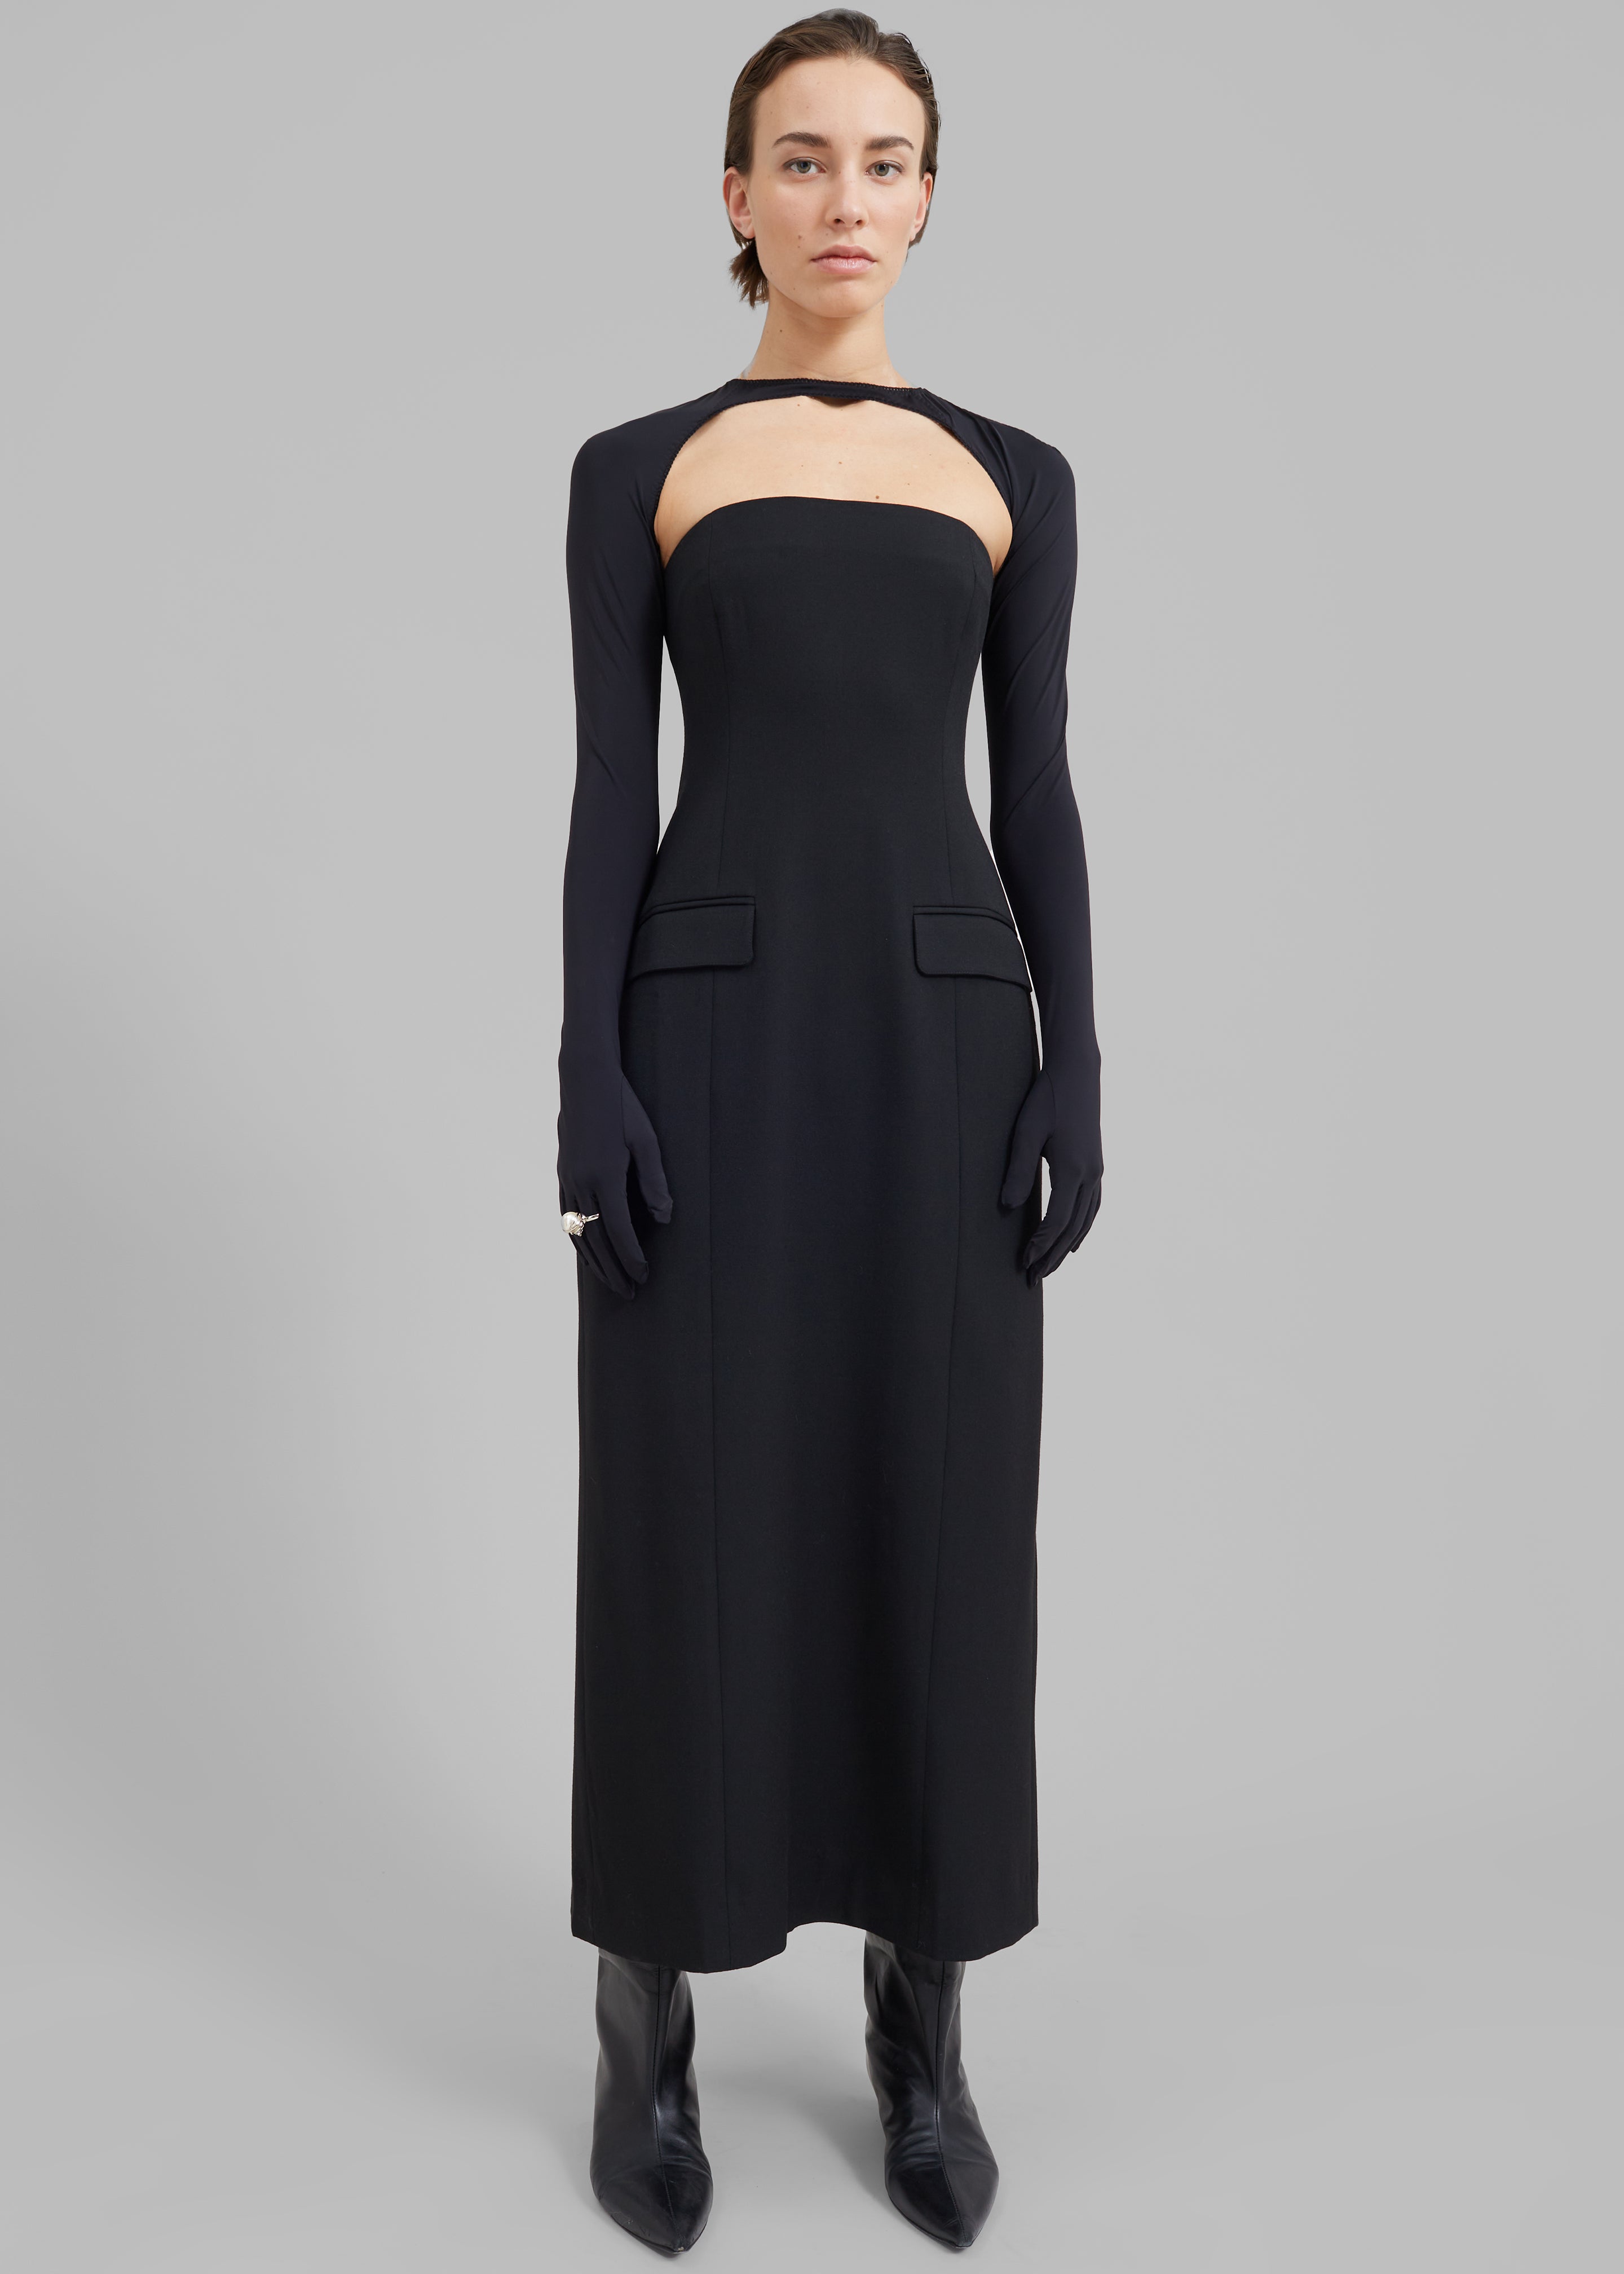 Beaufille Callie Dress - Black - 1